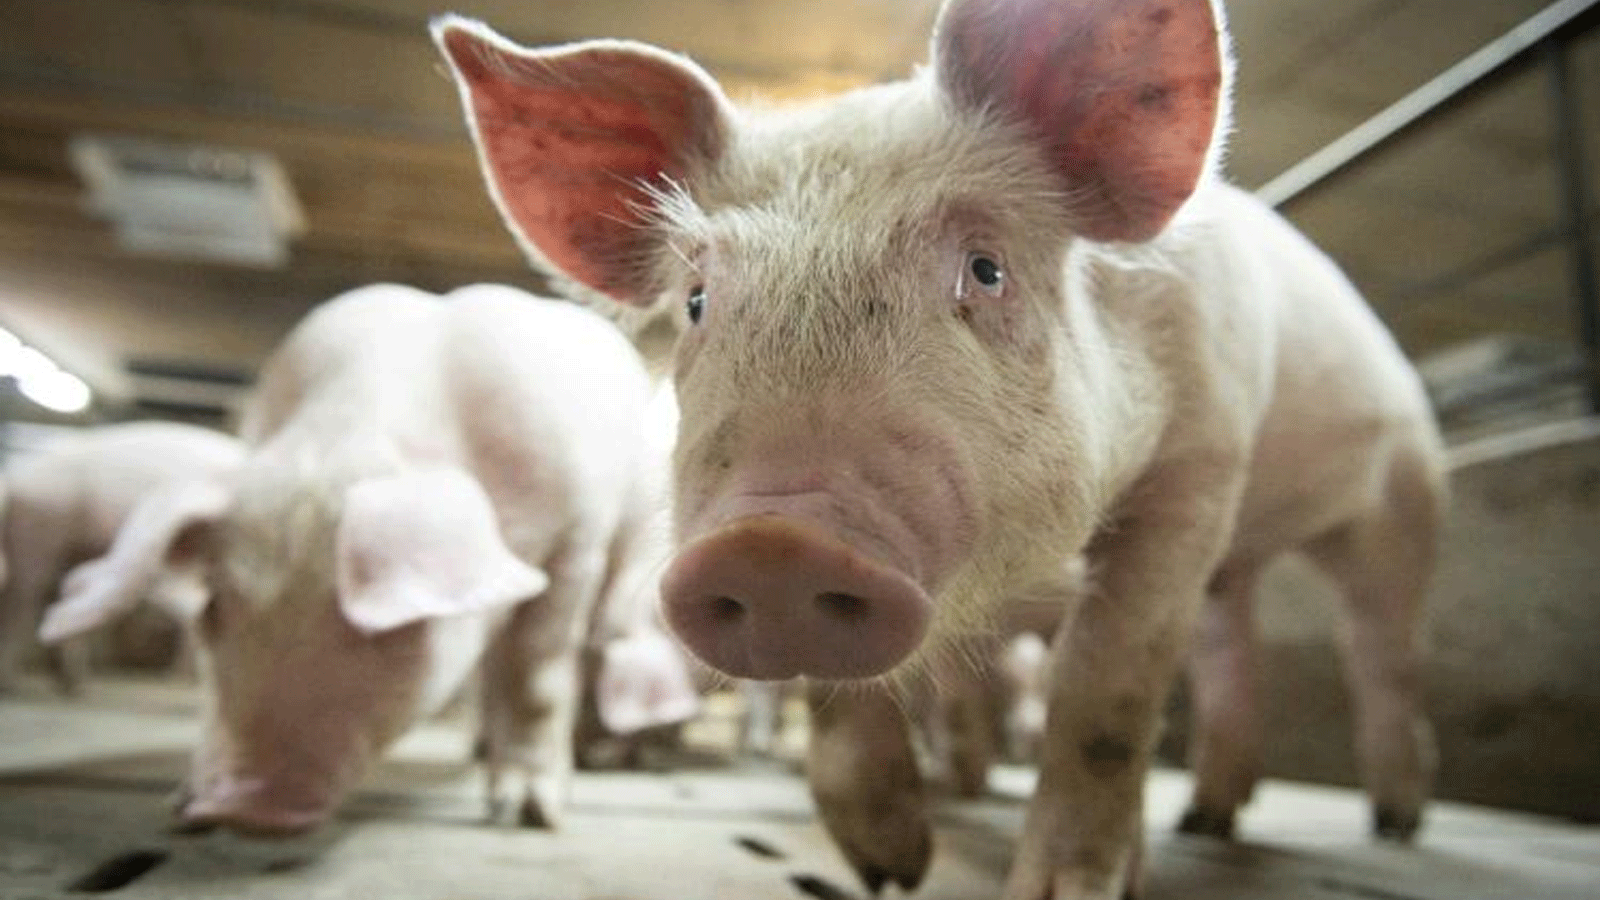 تمكن العلماء من إنعاش خلايا وأعضاء الخنازير بعد ساعة من الموت بتقنية جديدة، مما يمنح الأمل في التبرع بأعضاء بشرية في المستقبل